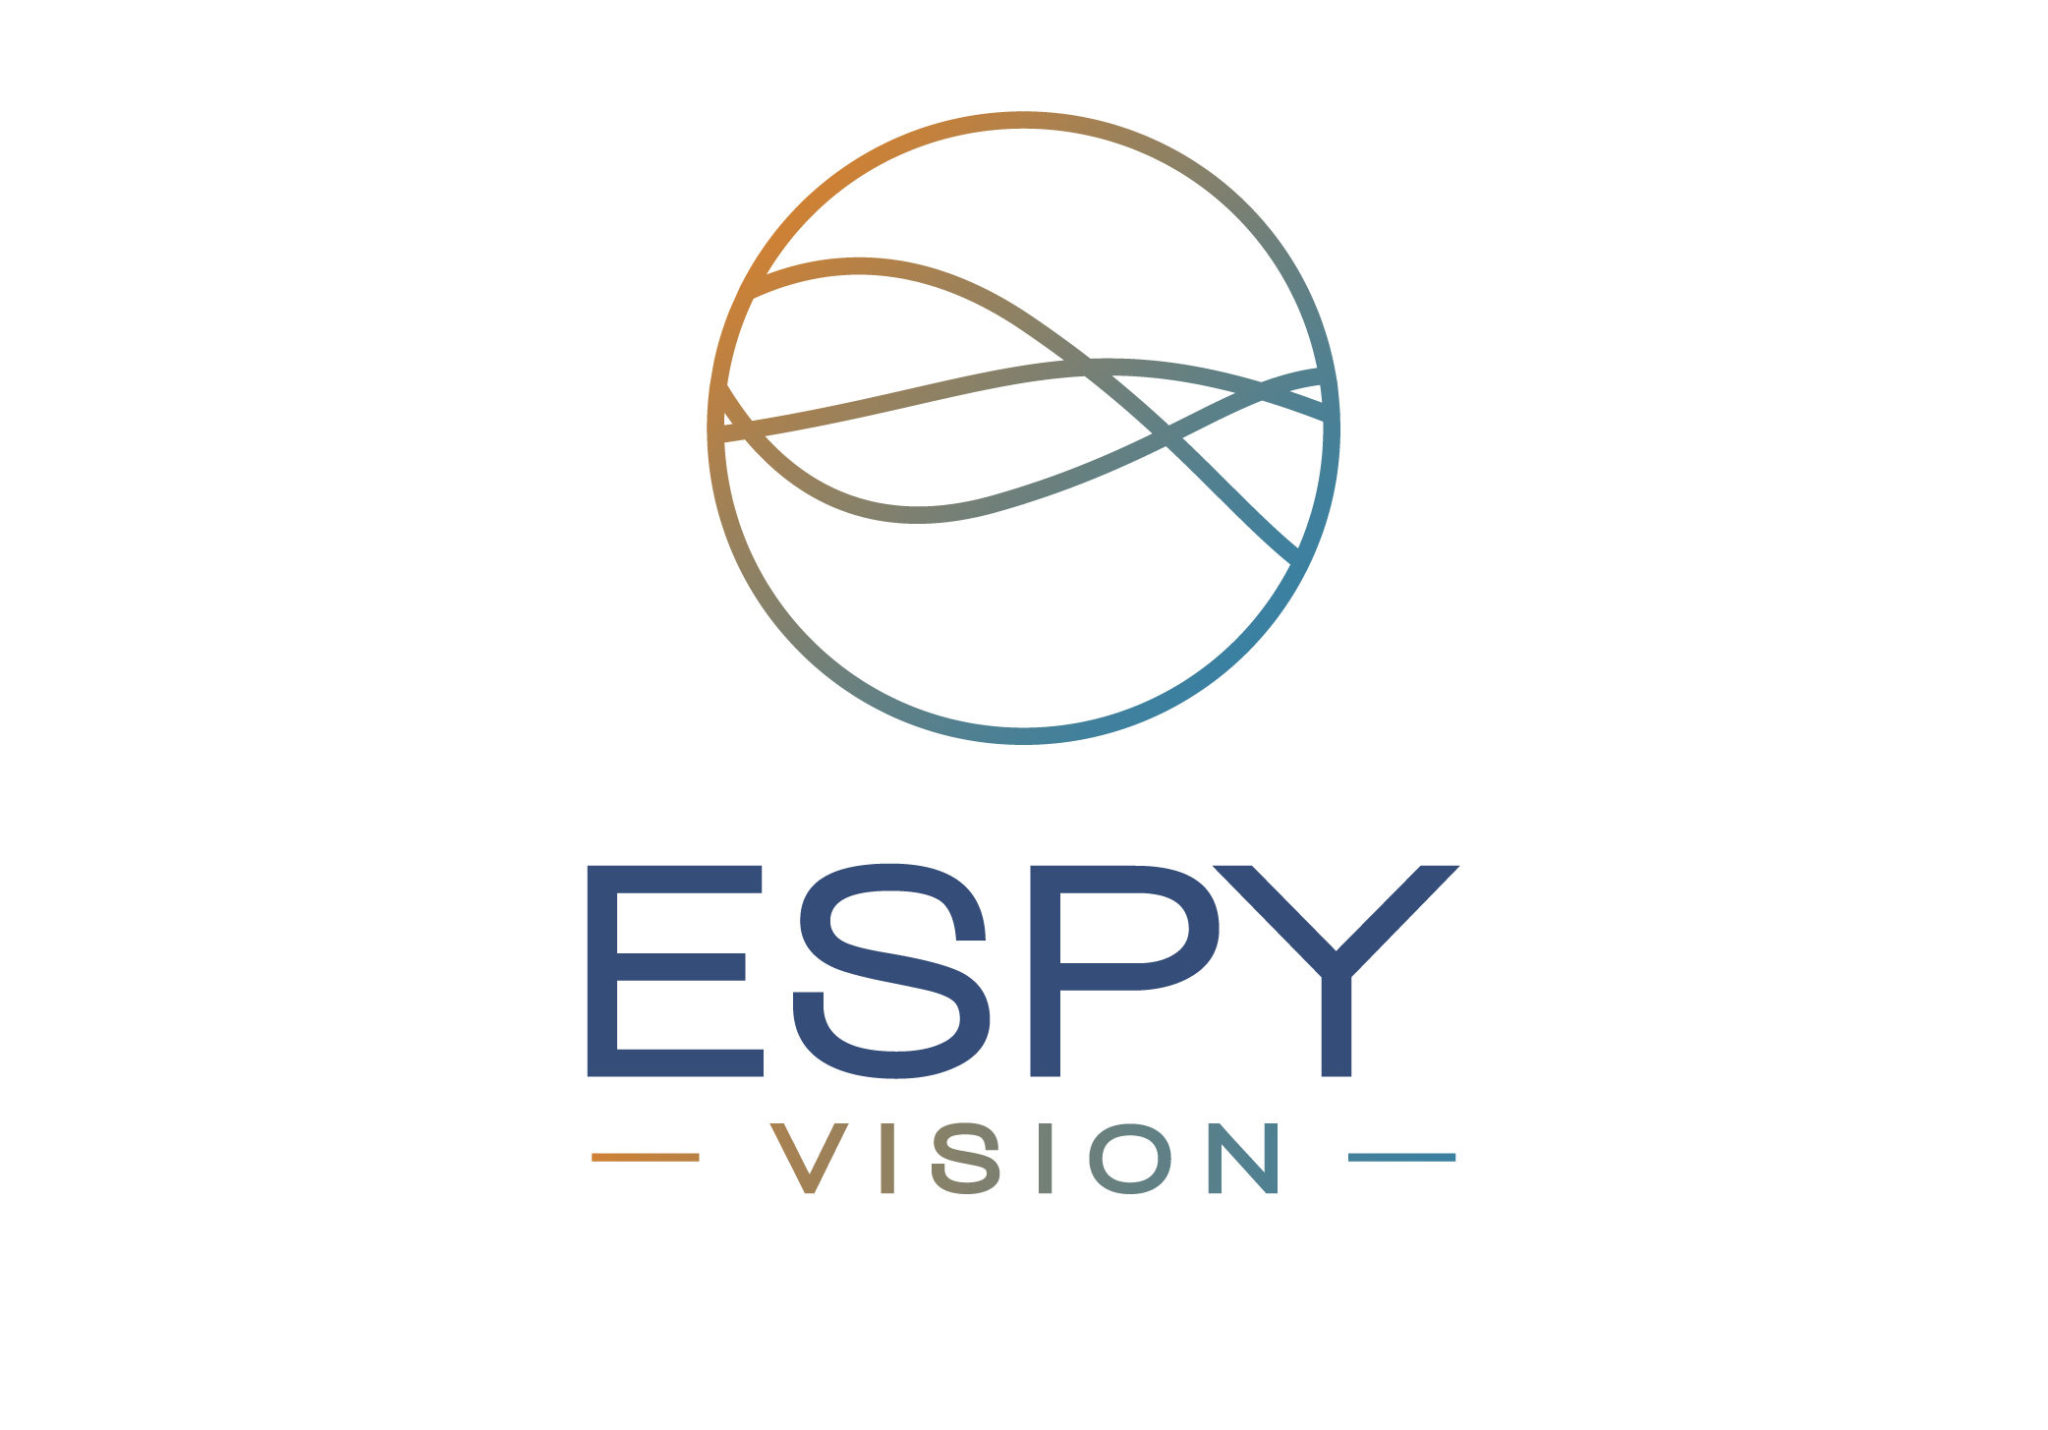 Espy Vision